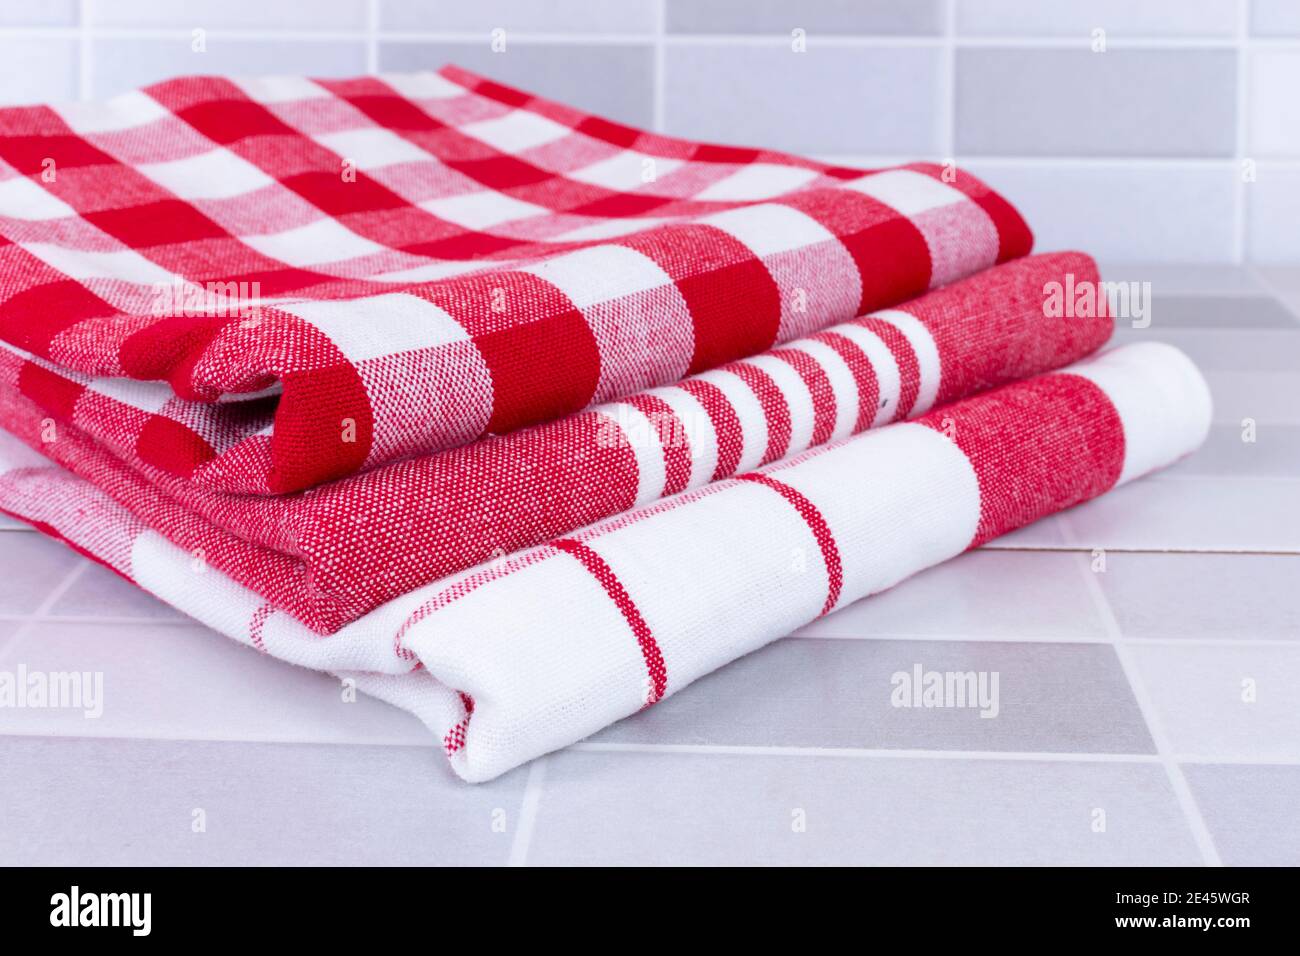 Serviettes de cuisine à carreaux rouges pliées sur une table Photo Stock -  Alamy